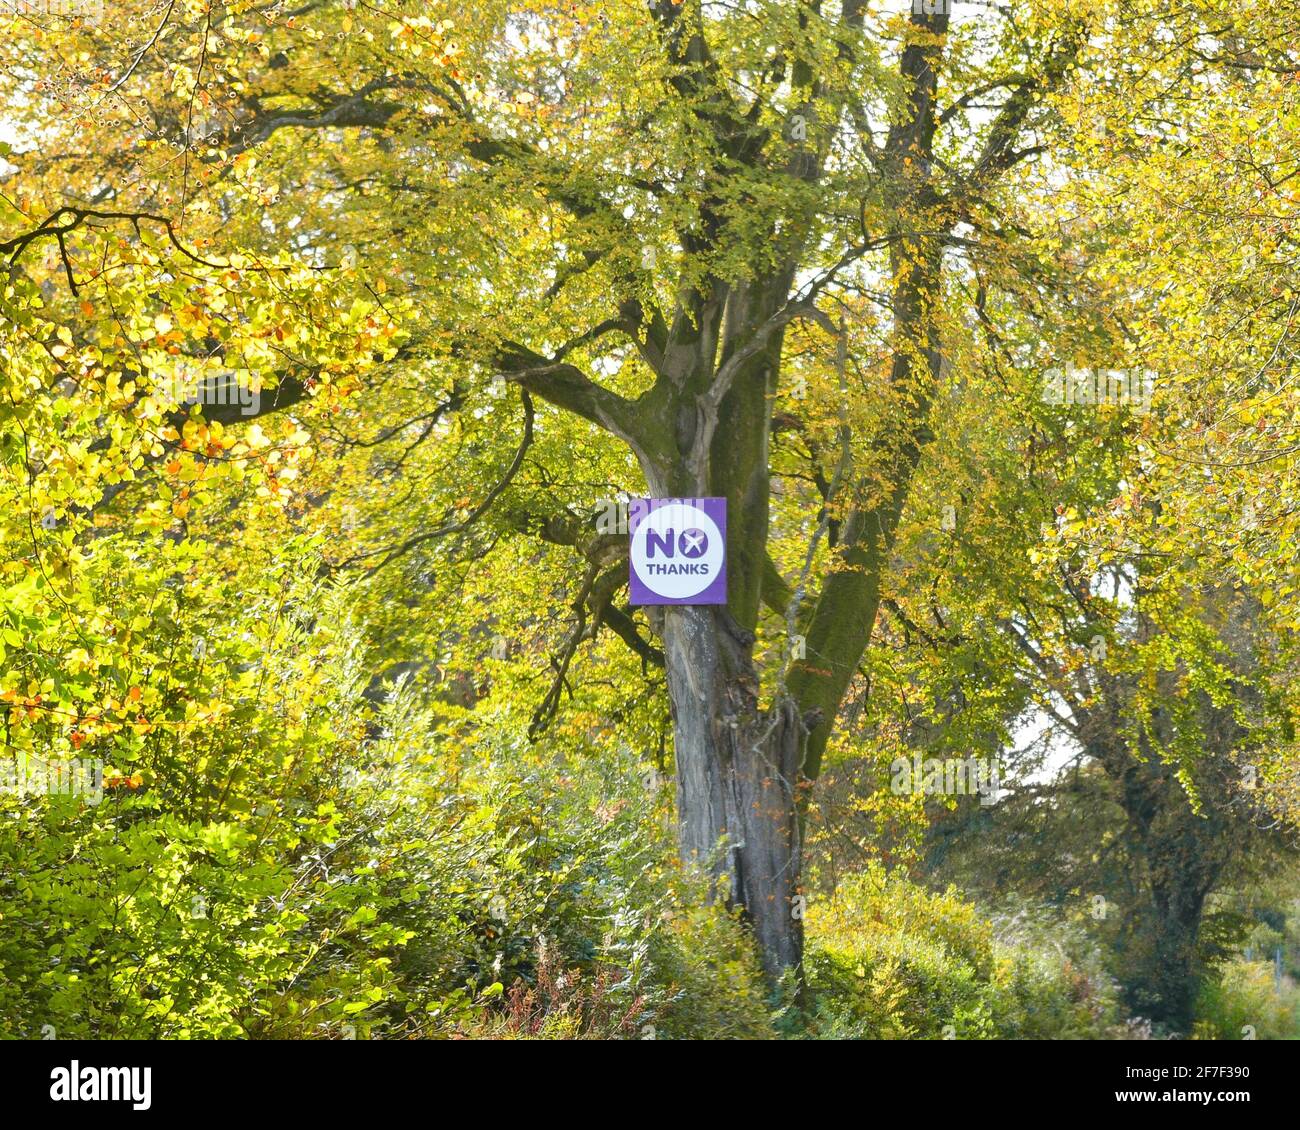 No Thanks Firma parte della campagna Better Together durante il referendum sull'indipendenza scozzese del 2014, Stirling, Scozia, Regno Unito Foto Stock